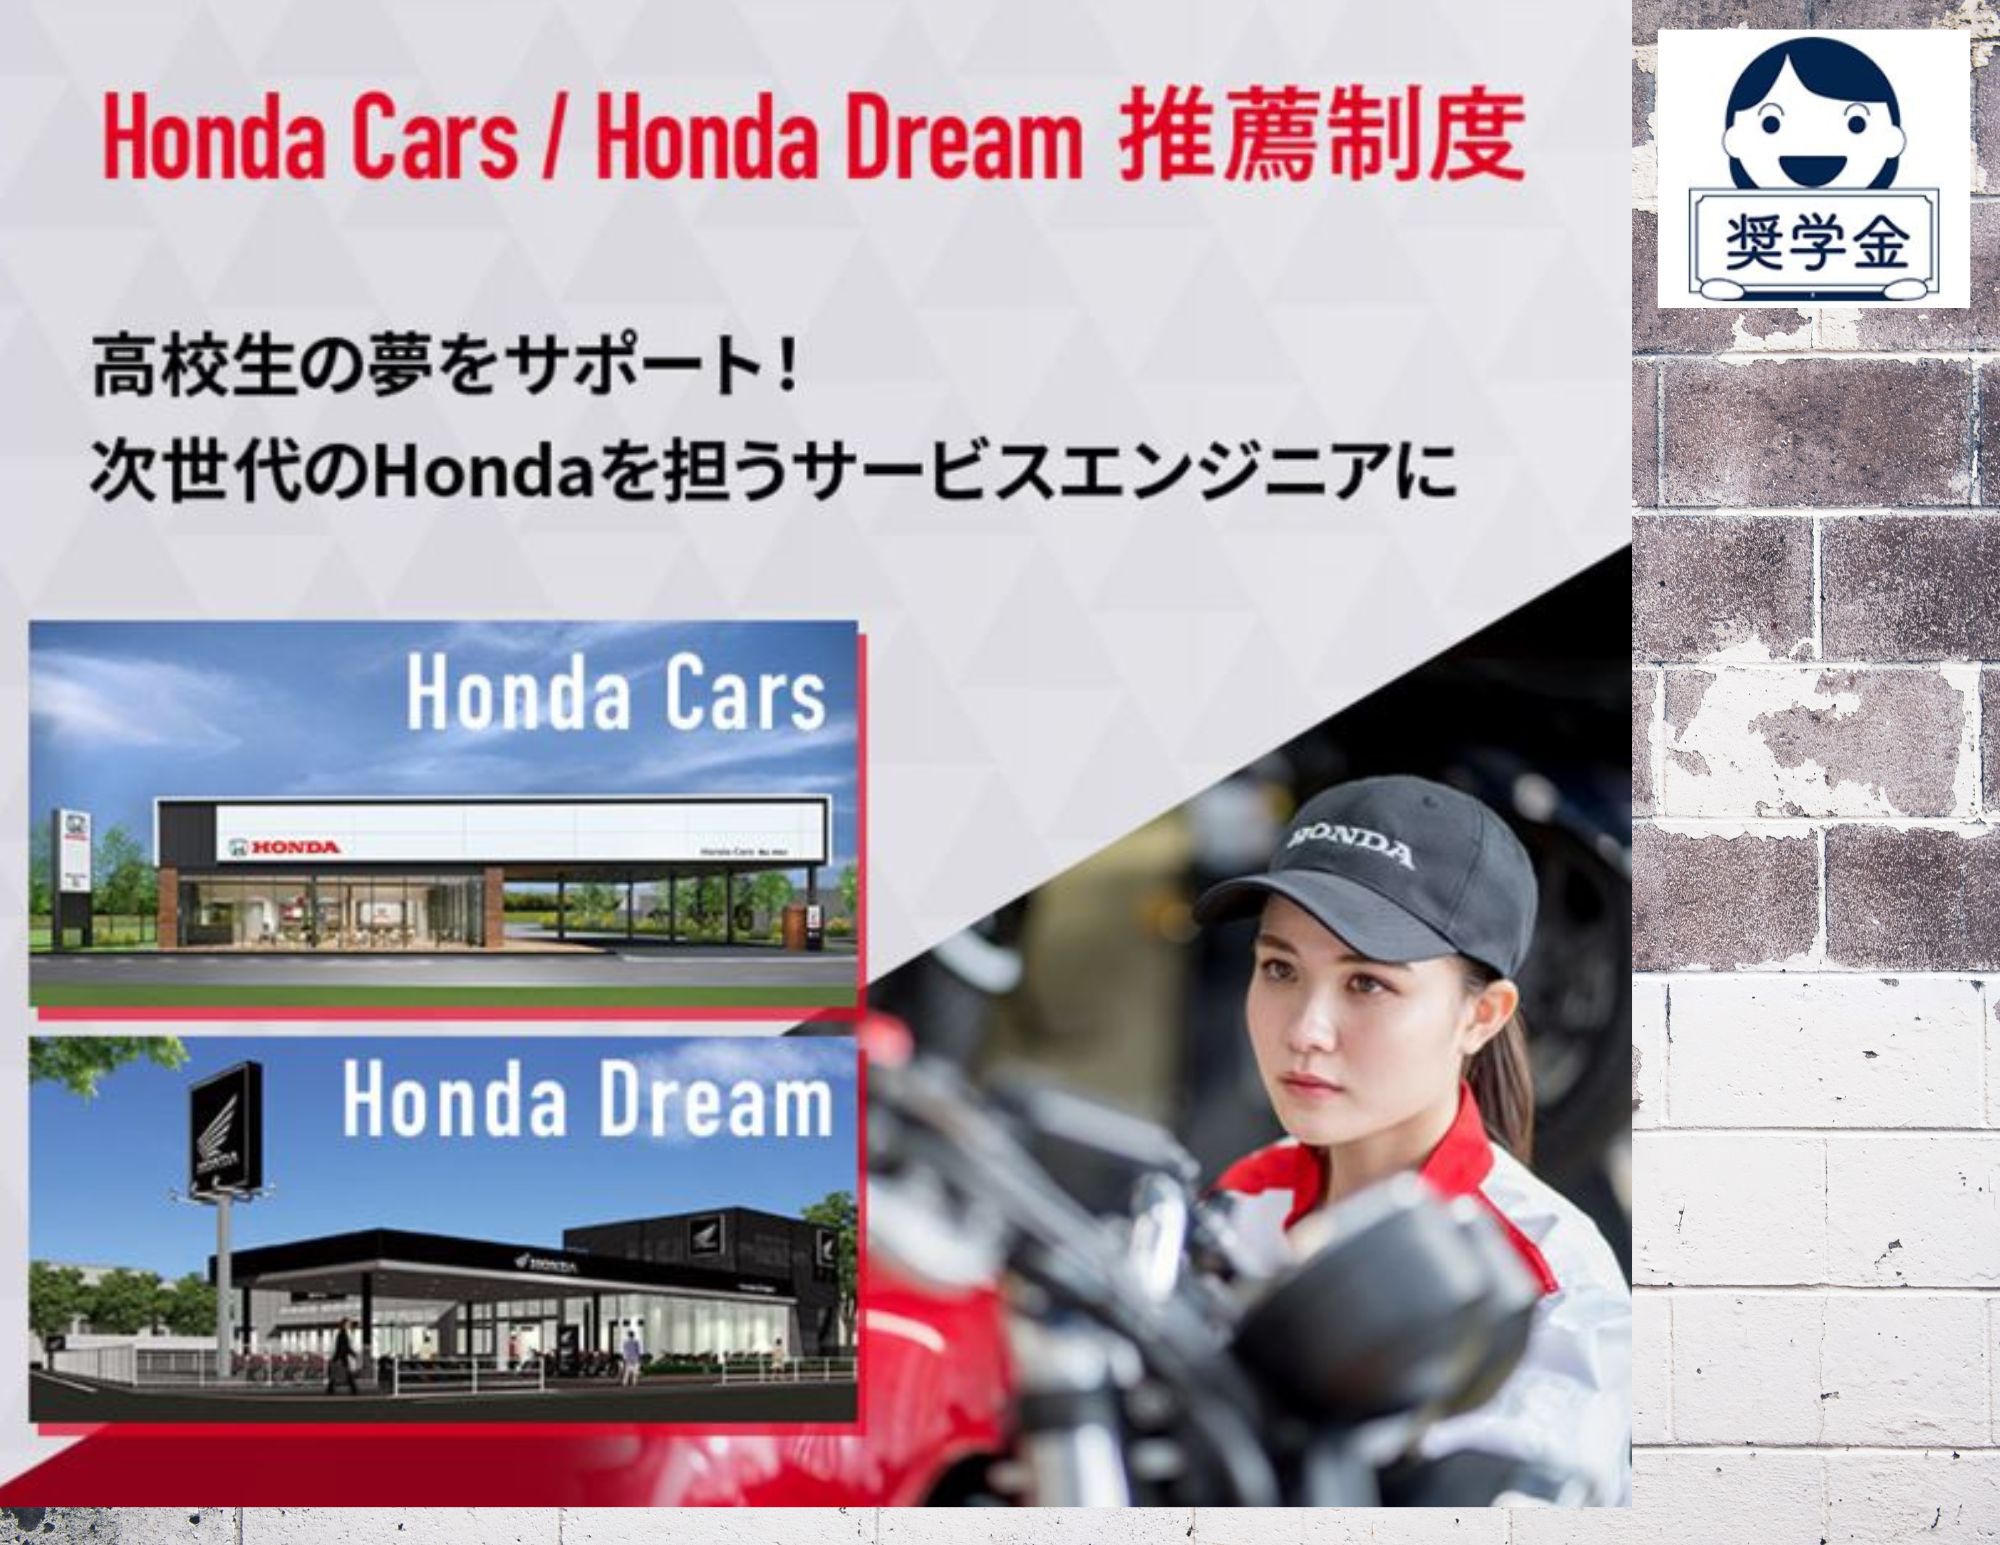 【新コーナー】企業奨学金とHonda Cars / Honda Dream 推薦のご紹介